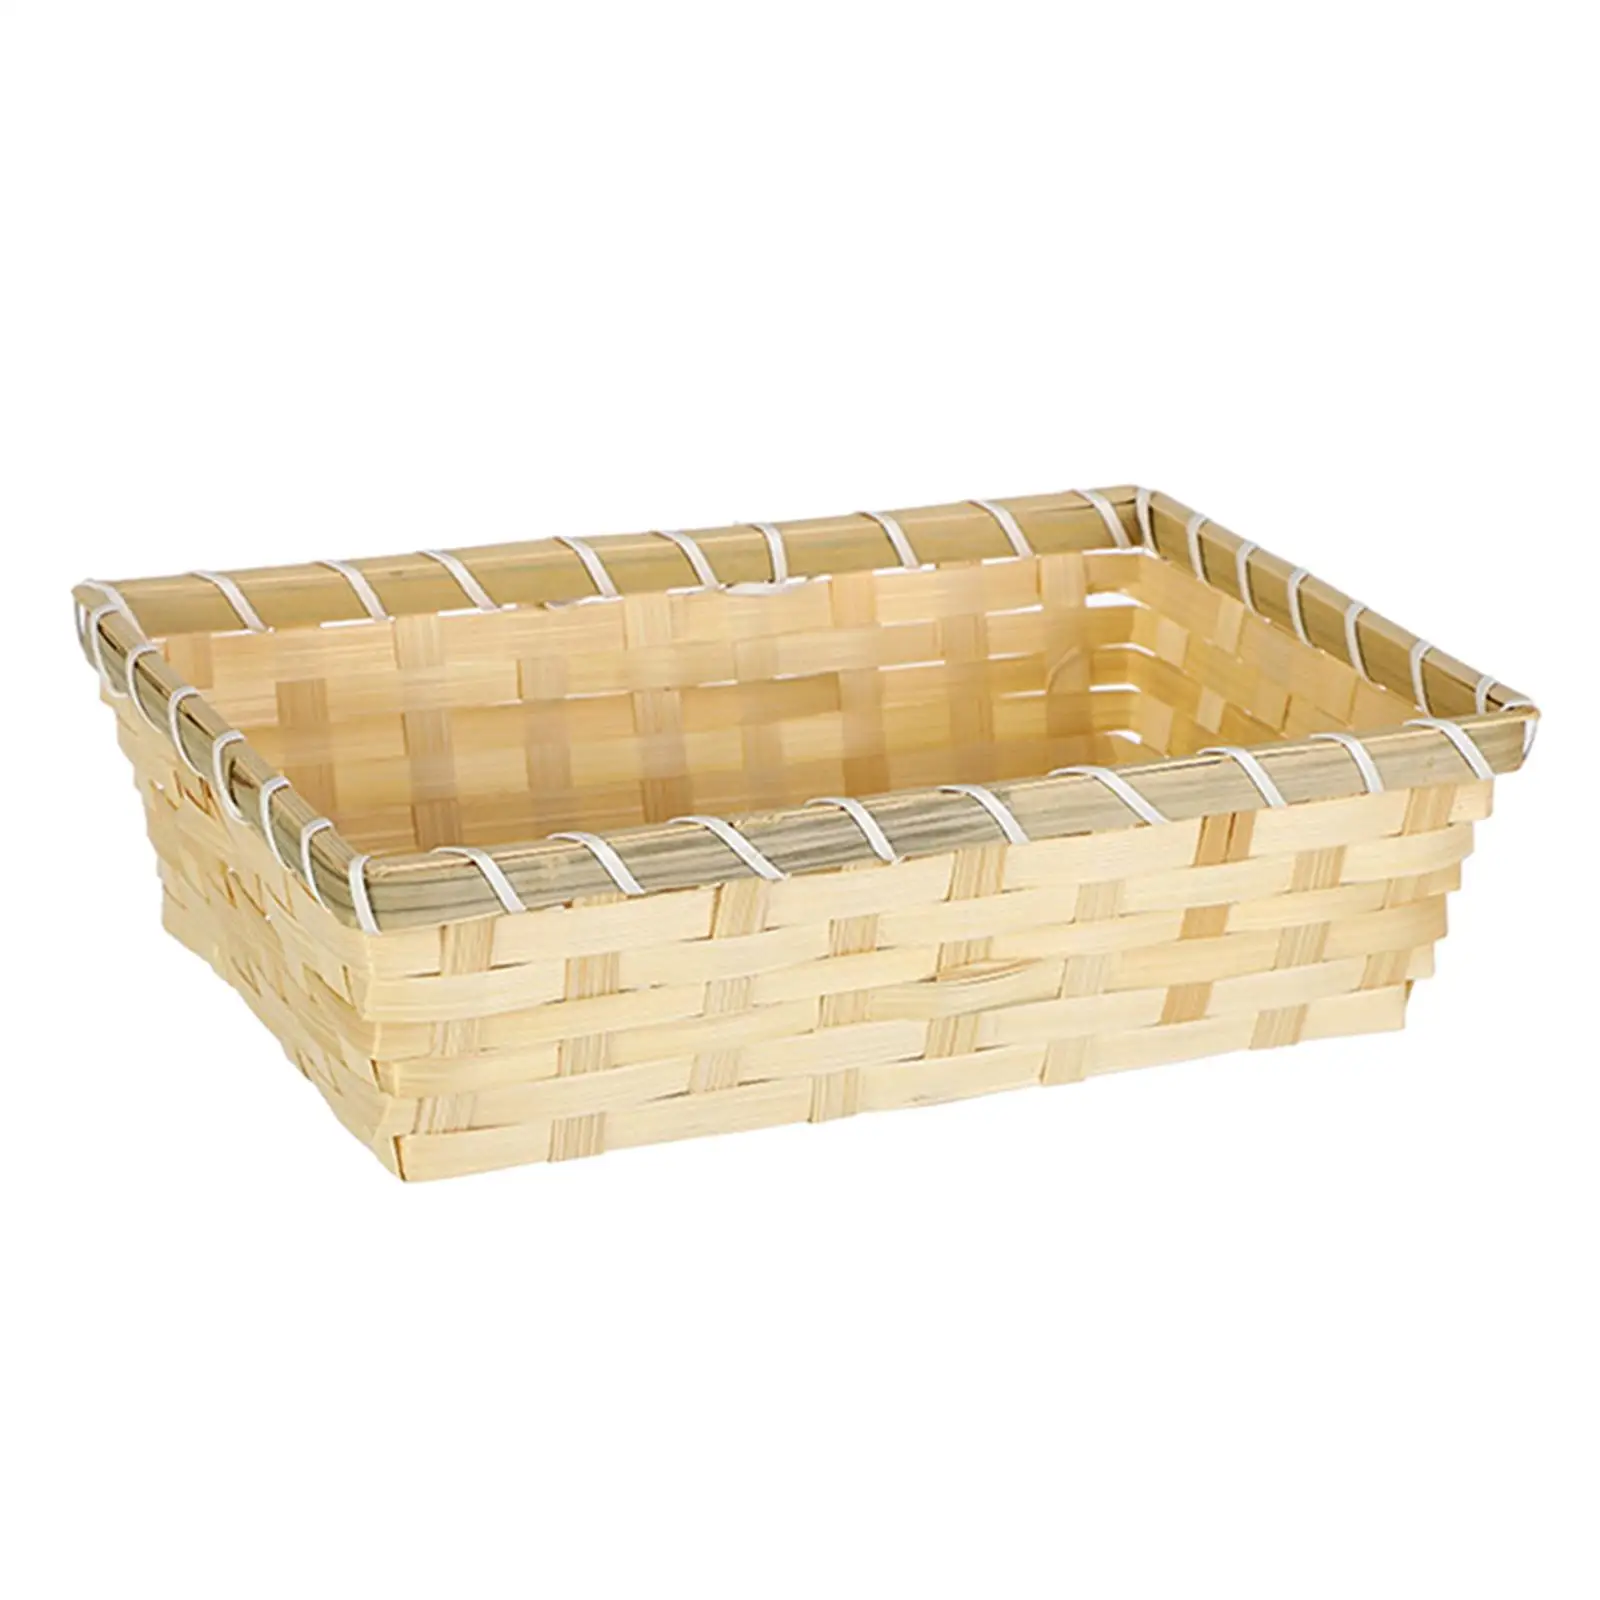 Storage Basket Multipurpose Woven Sundries Bread Basket Food Serving Basket for Office Closets Pantry Shelves Kitchen Bathroom